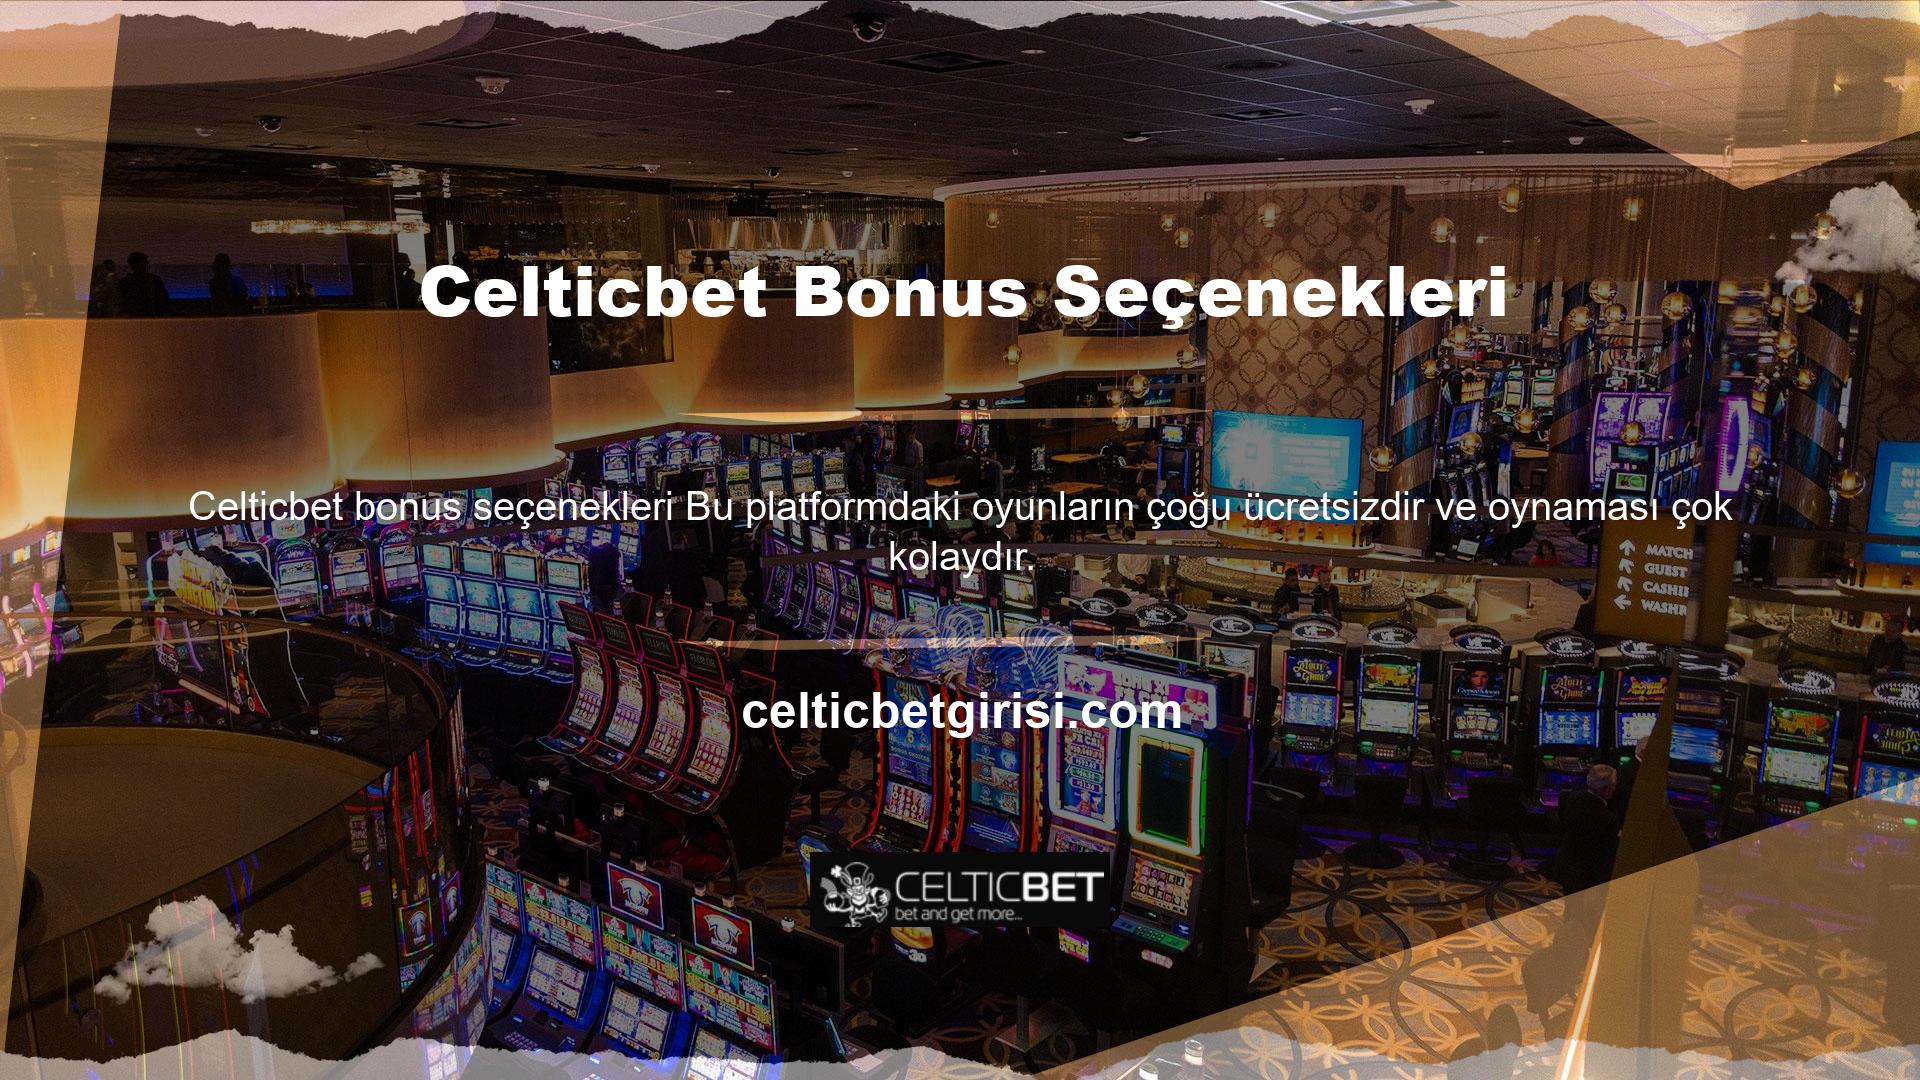 Tek Celticbet bonus seçenekleri  gereken belirli zaman aralıklarında farklı bonuslar almak